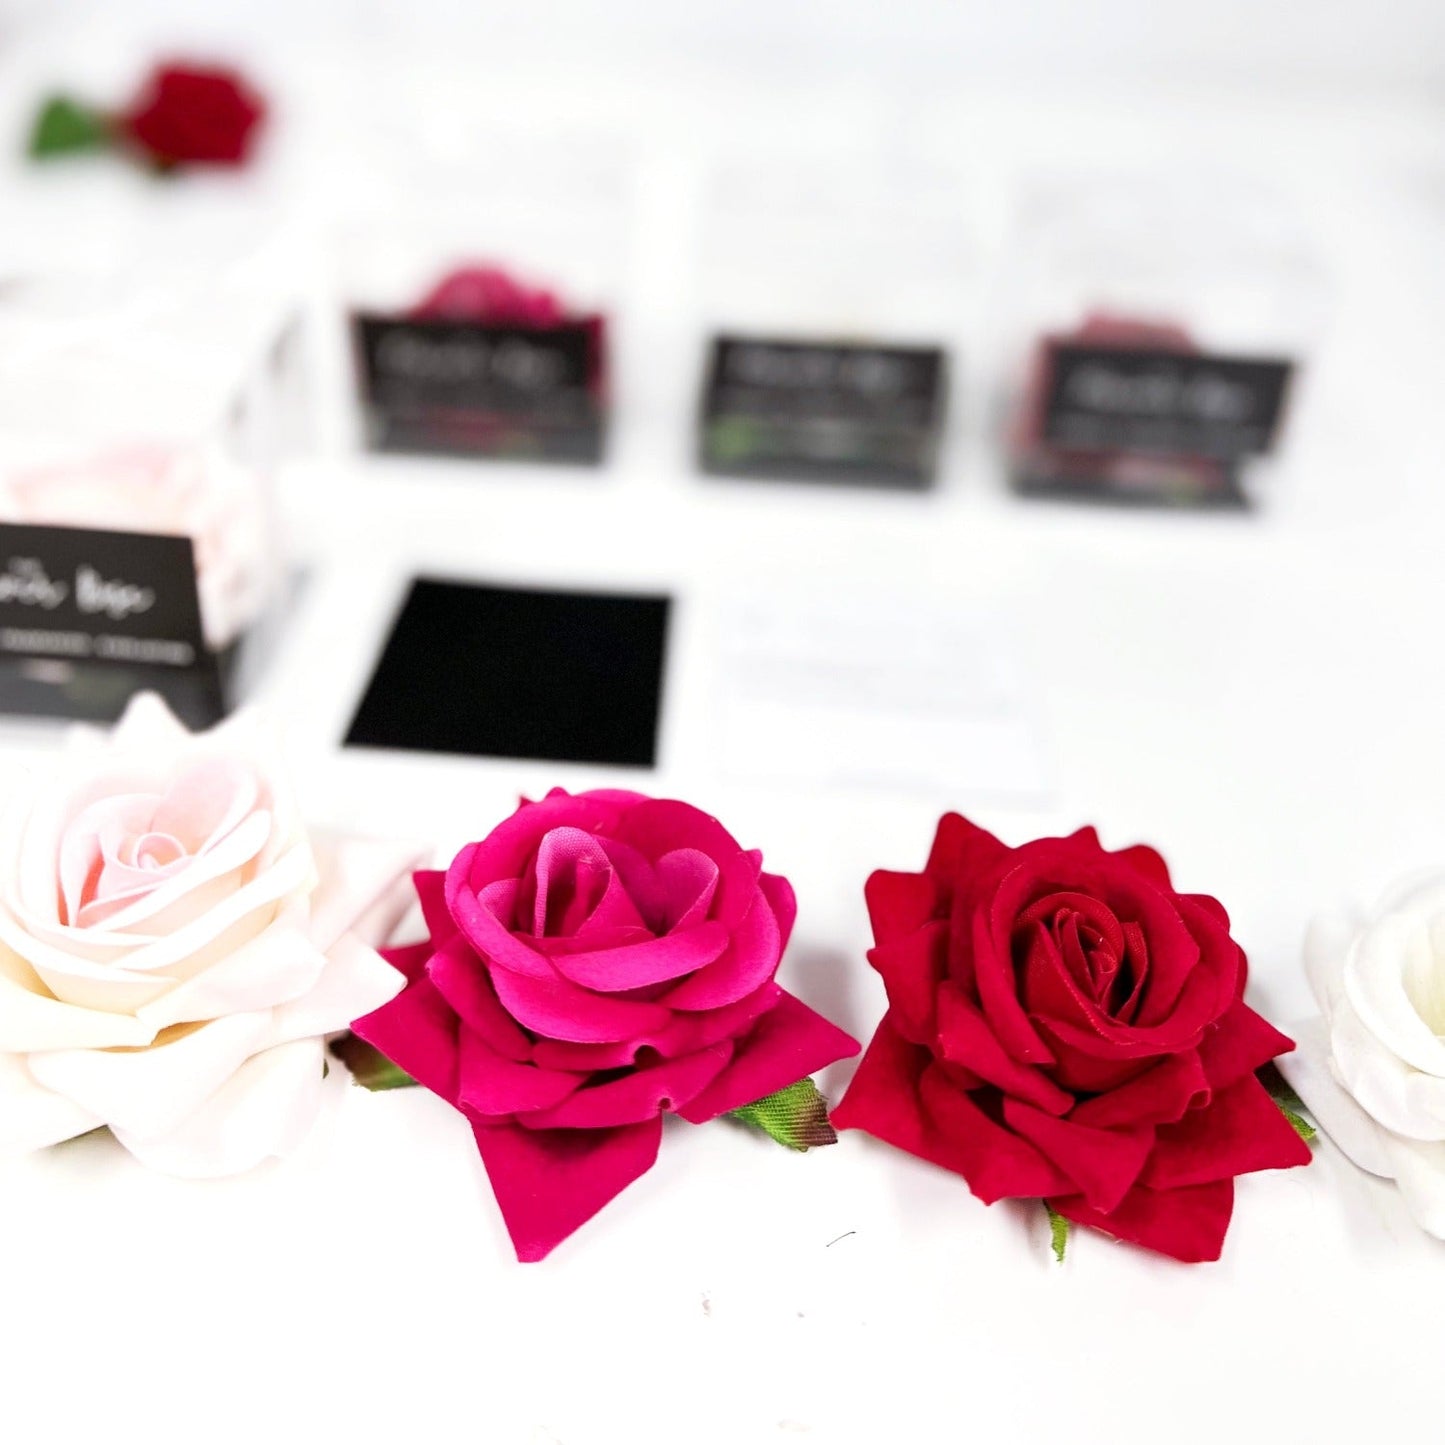 Everlasting Ivory Rose Wedding Gift - For an Everlasting Love